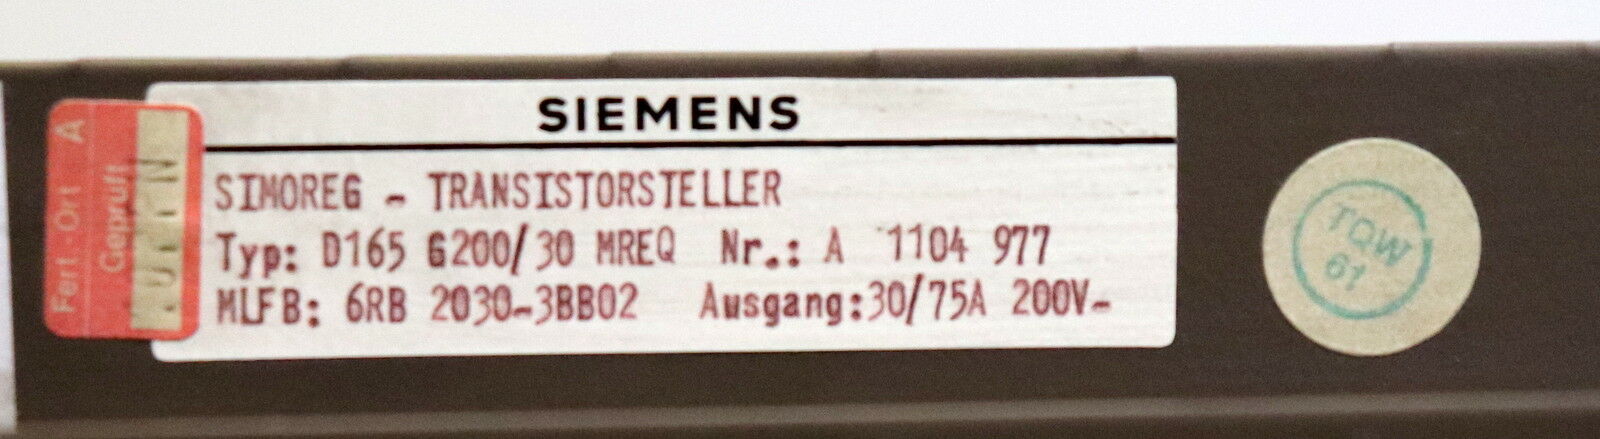 SIEMENS SIMOREG Transistorsteller Rack ohne Einschübe D165 G200/30 MREQ 6RB2030